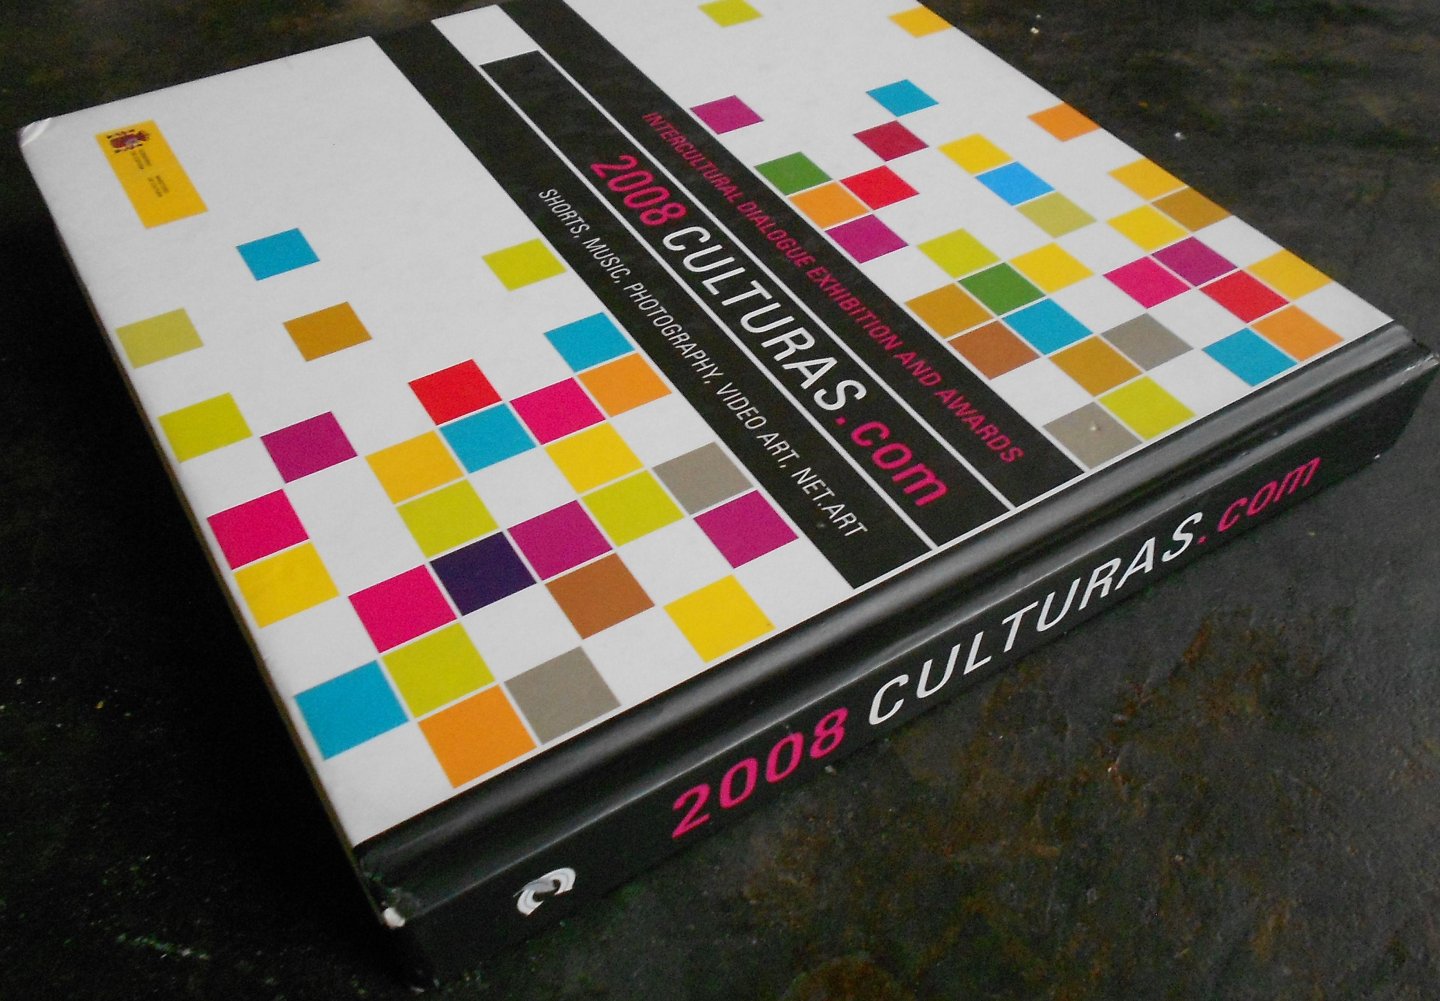  - 2008 culturas.com